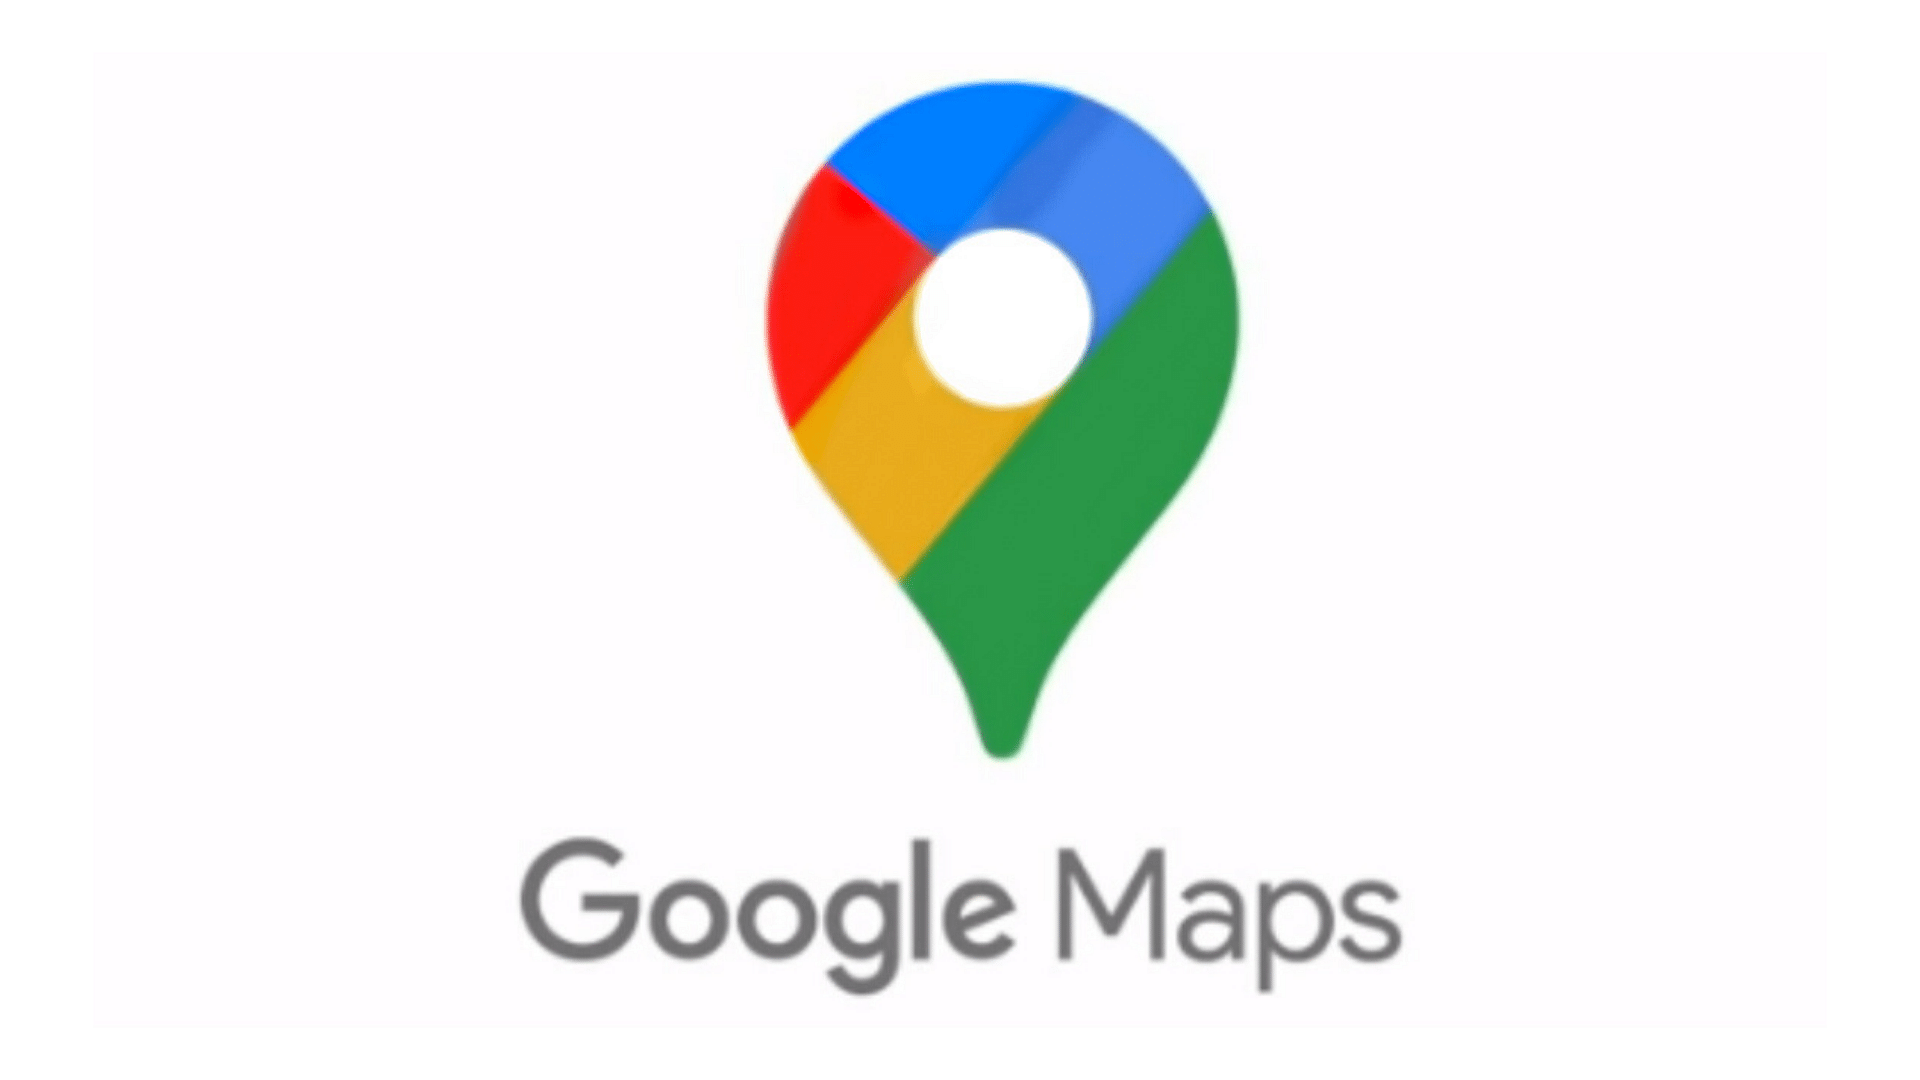 Google Maps has an offline feature.